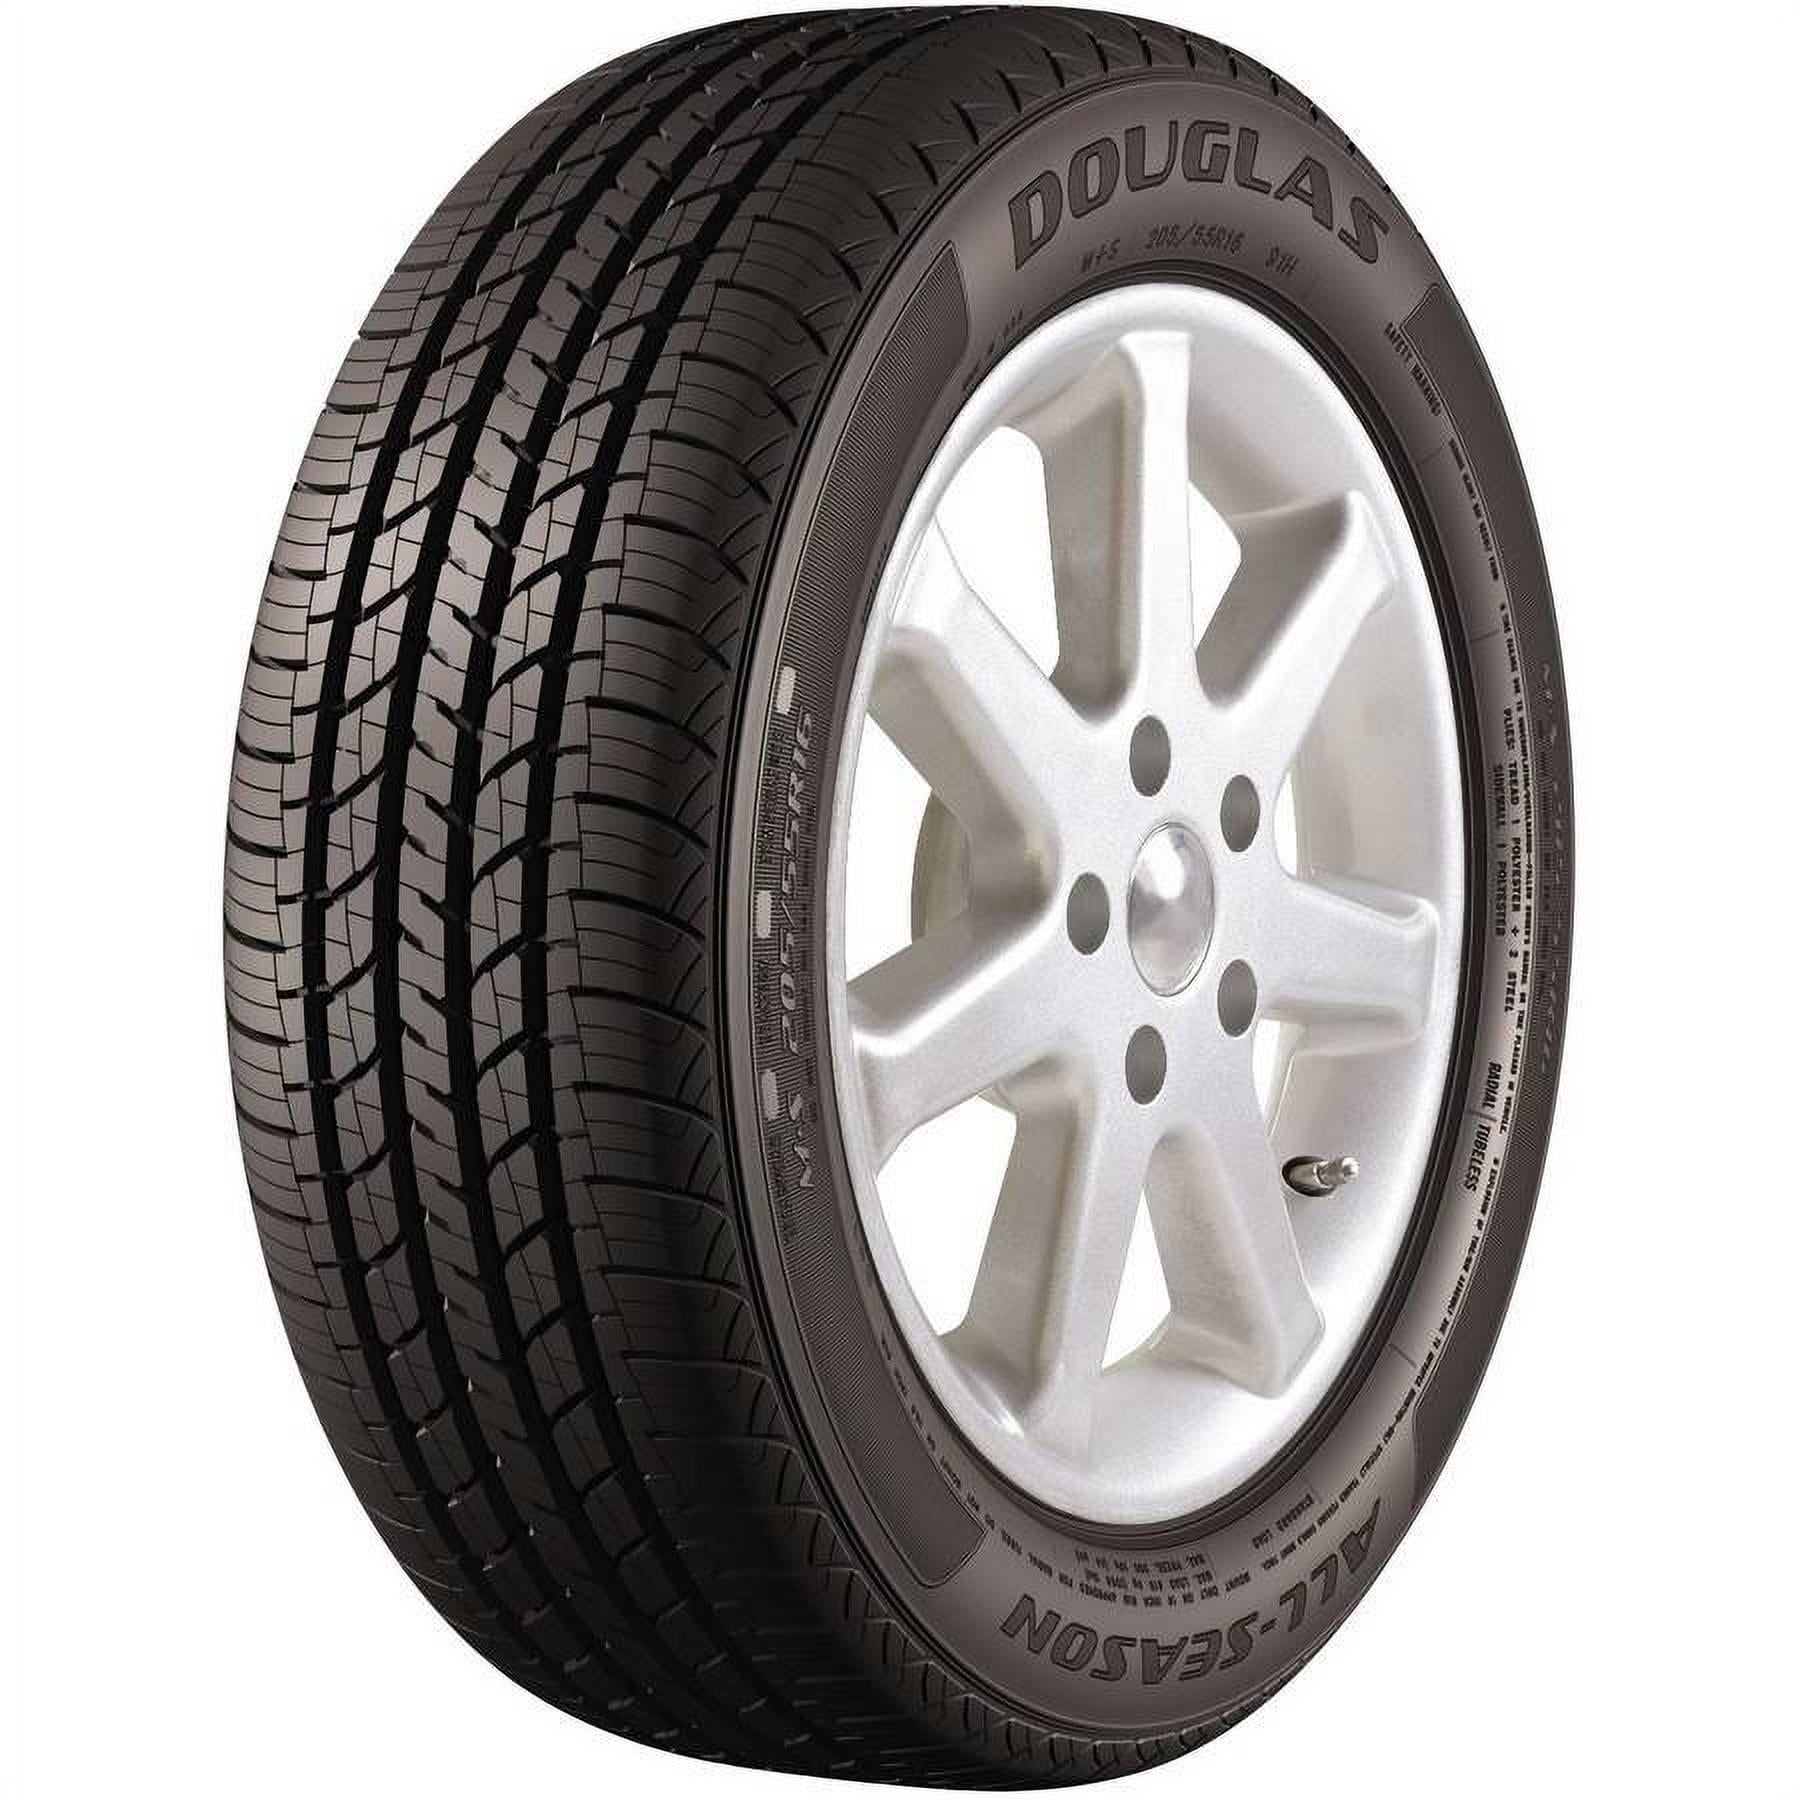 Michelin Defender LTX M/S 275/55R20 113T Used Tire 11-12/32 